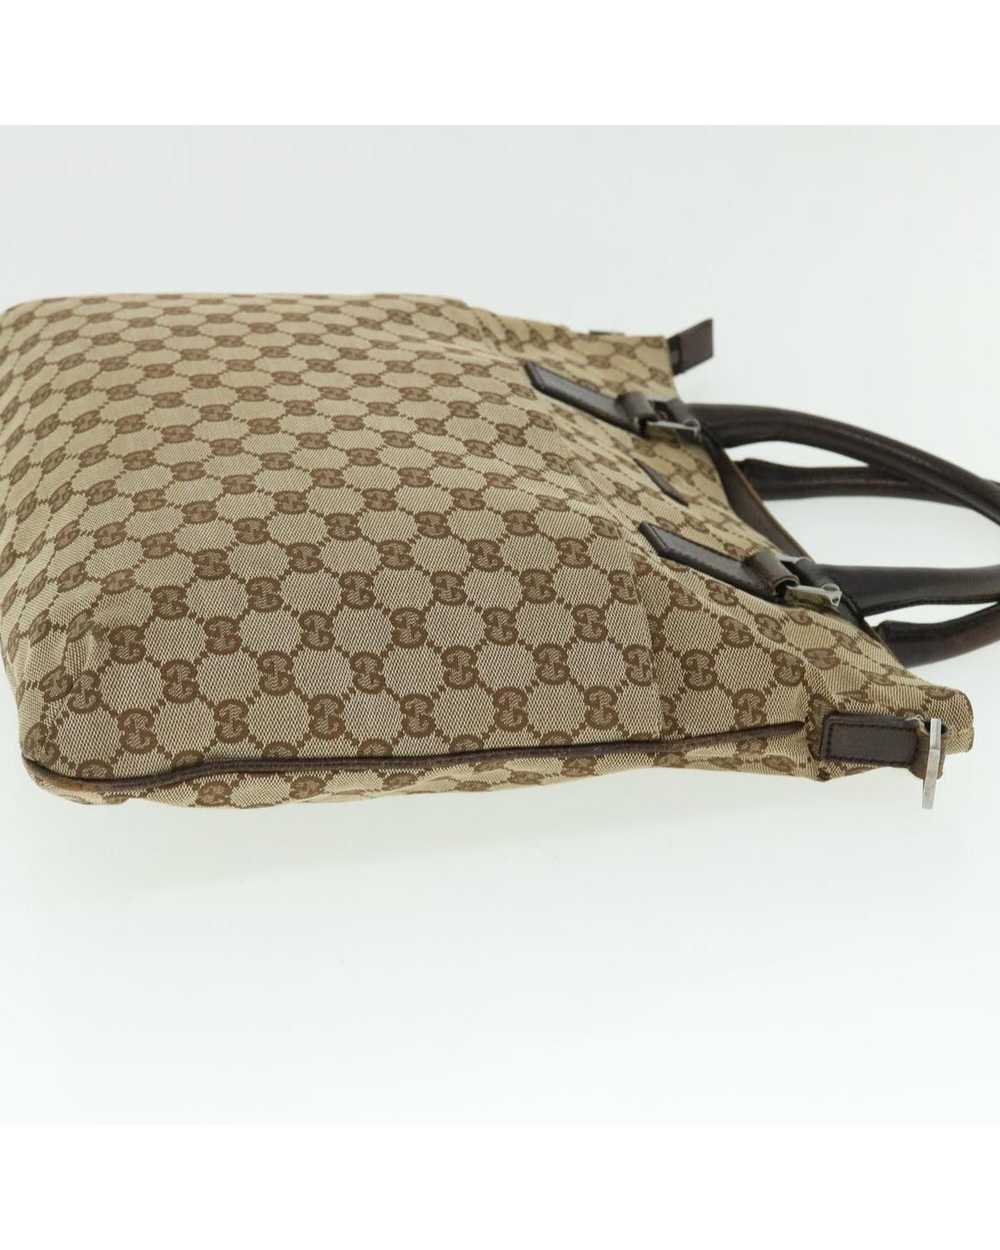 Gucci Beige Canvas Shoulder Bag with GG Design - image 4